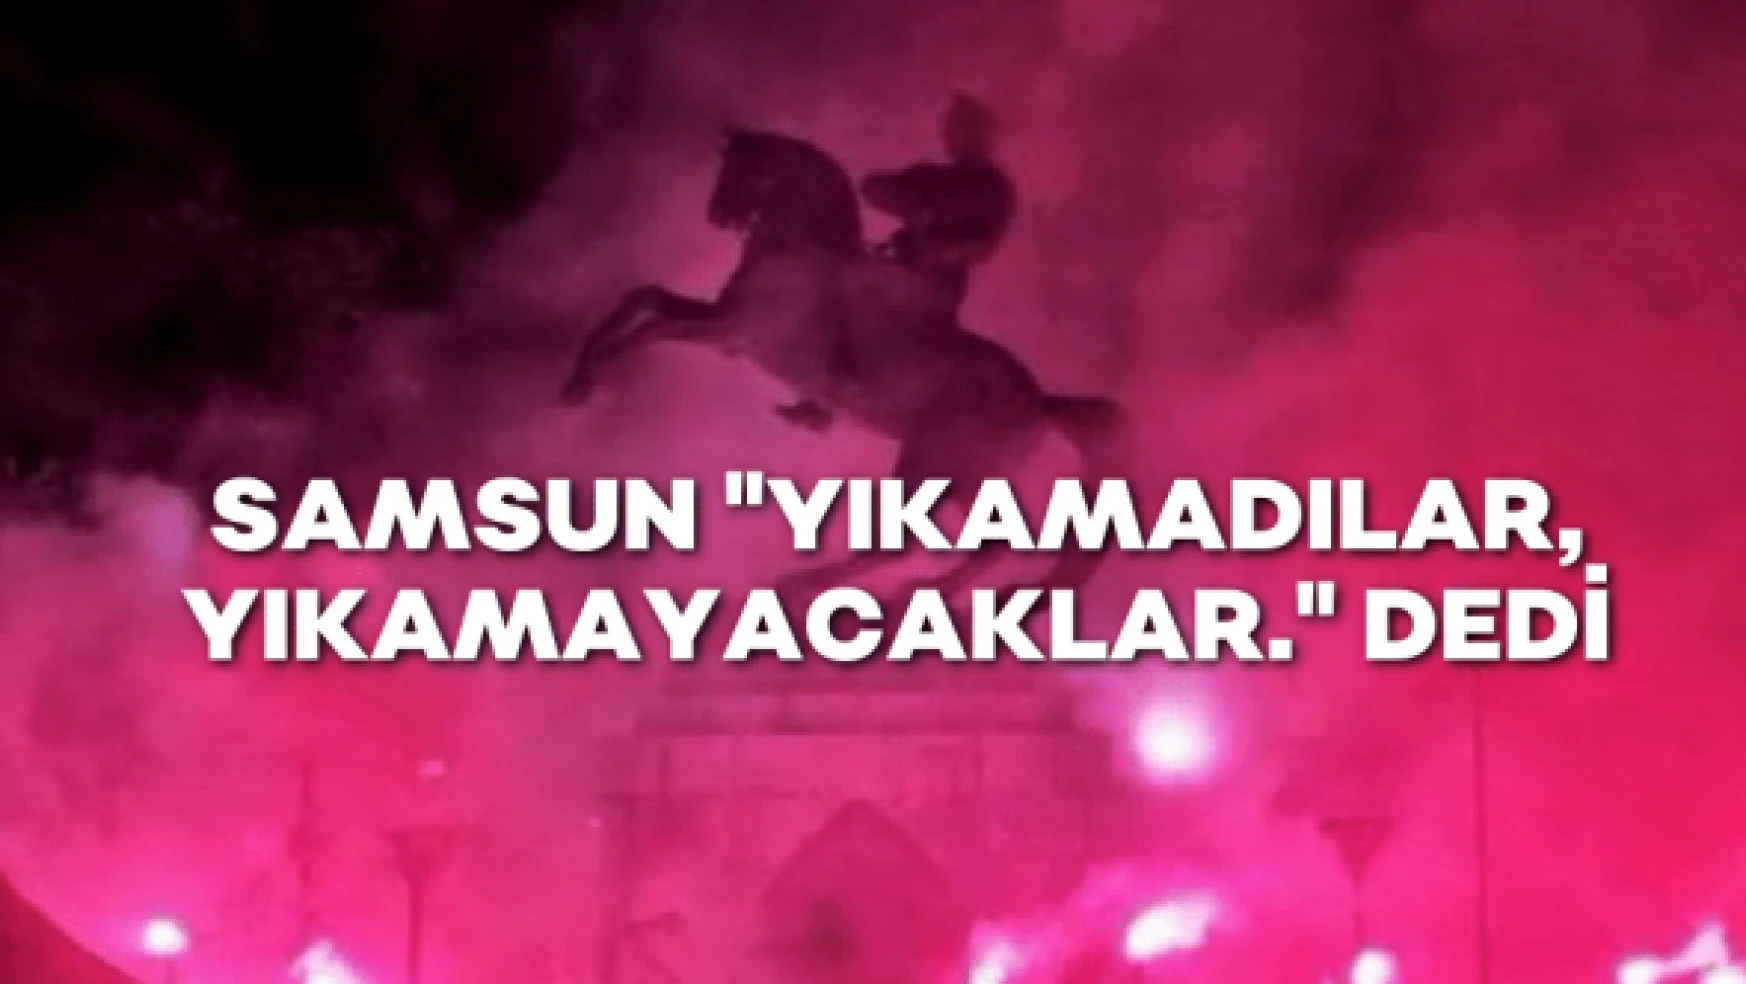 Devirmeye çalıştılar yapamadılar, Samsun Atatürk anıtına sahip çıktı